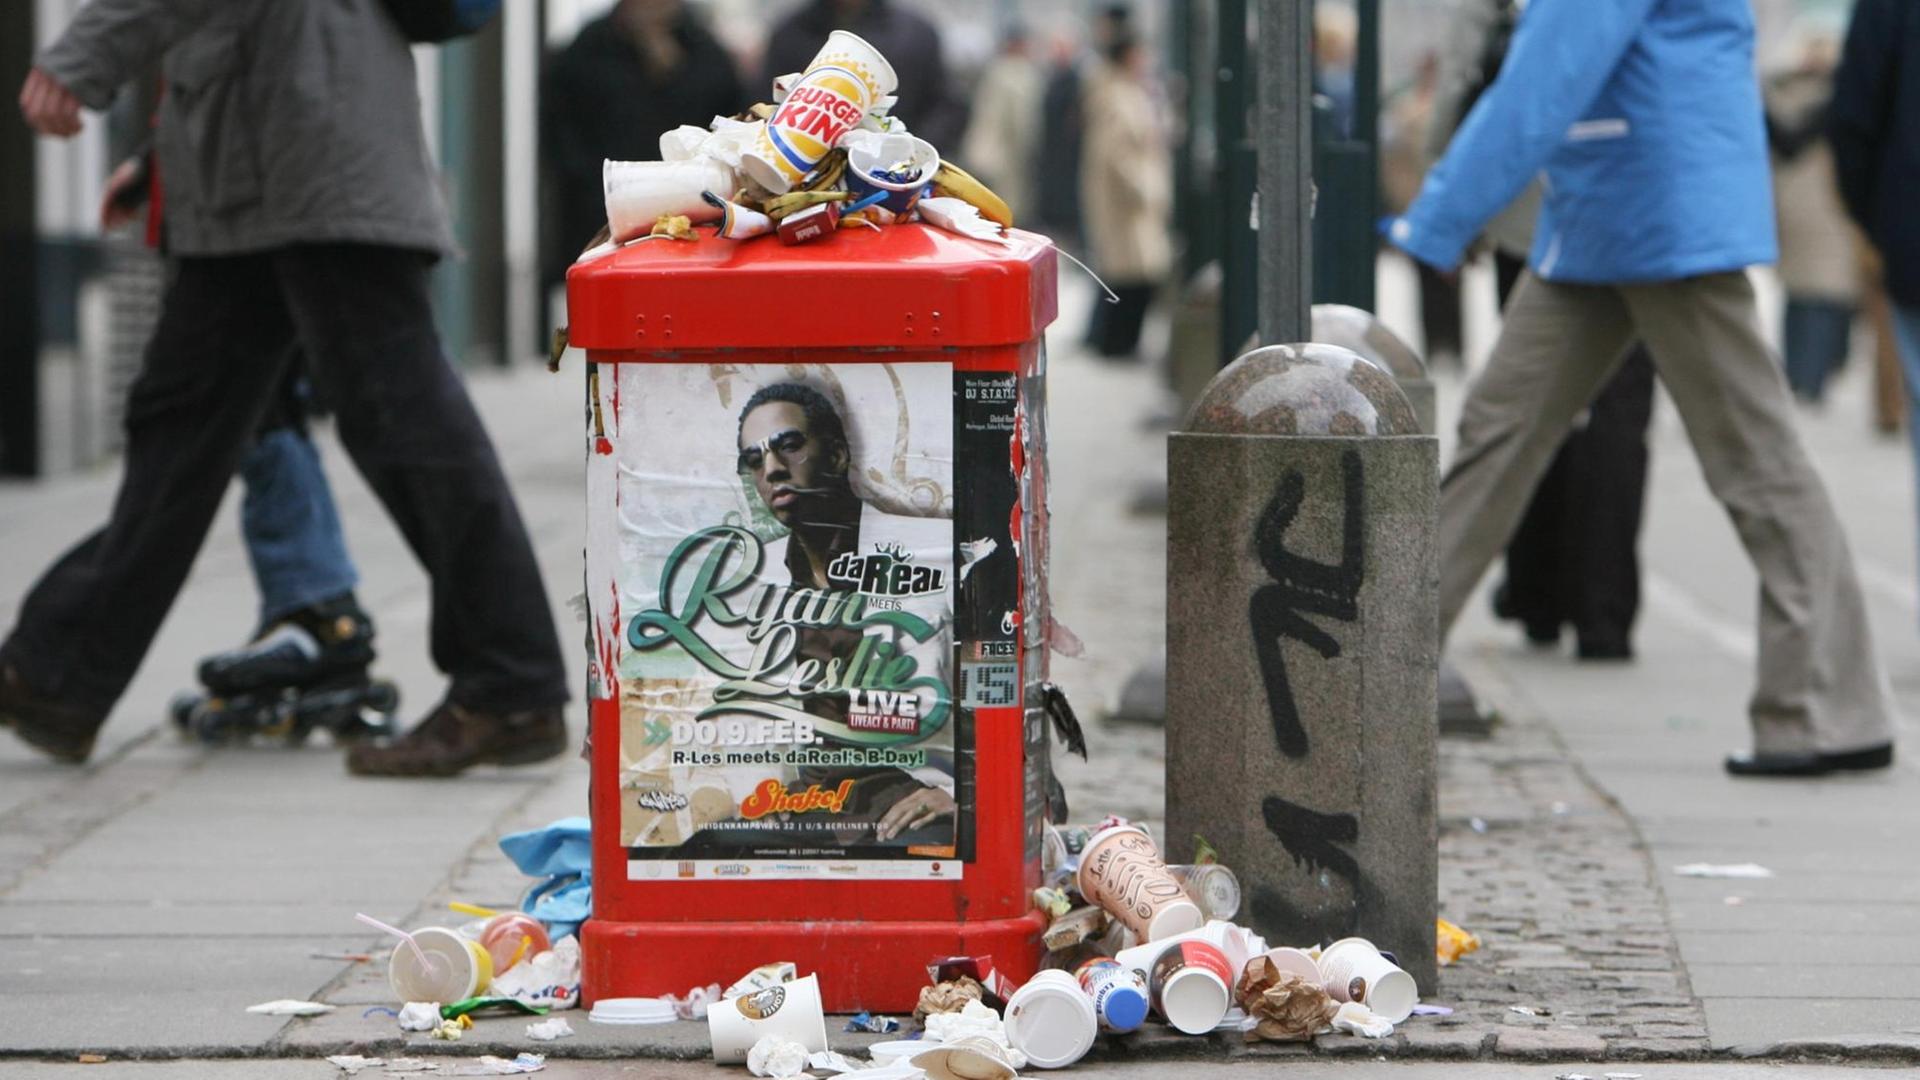 Passanten gehen in der Fußgängerzone in Hamburg an einem überfüllten Abfalleimer vorbei.